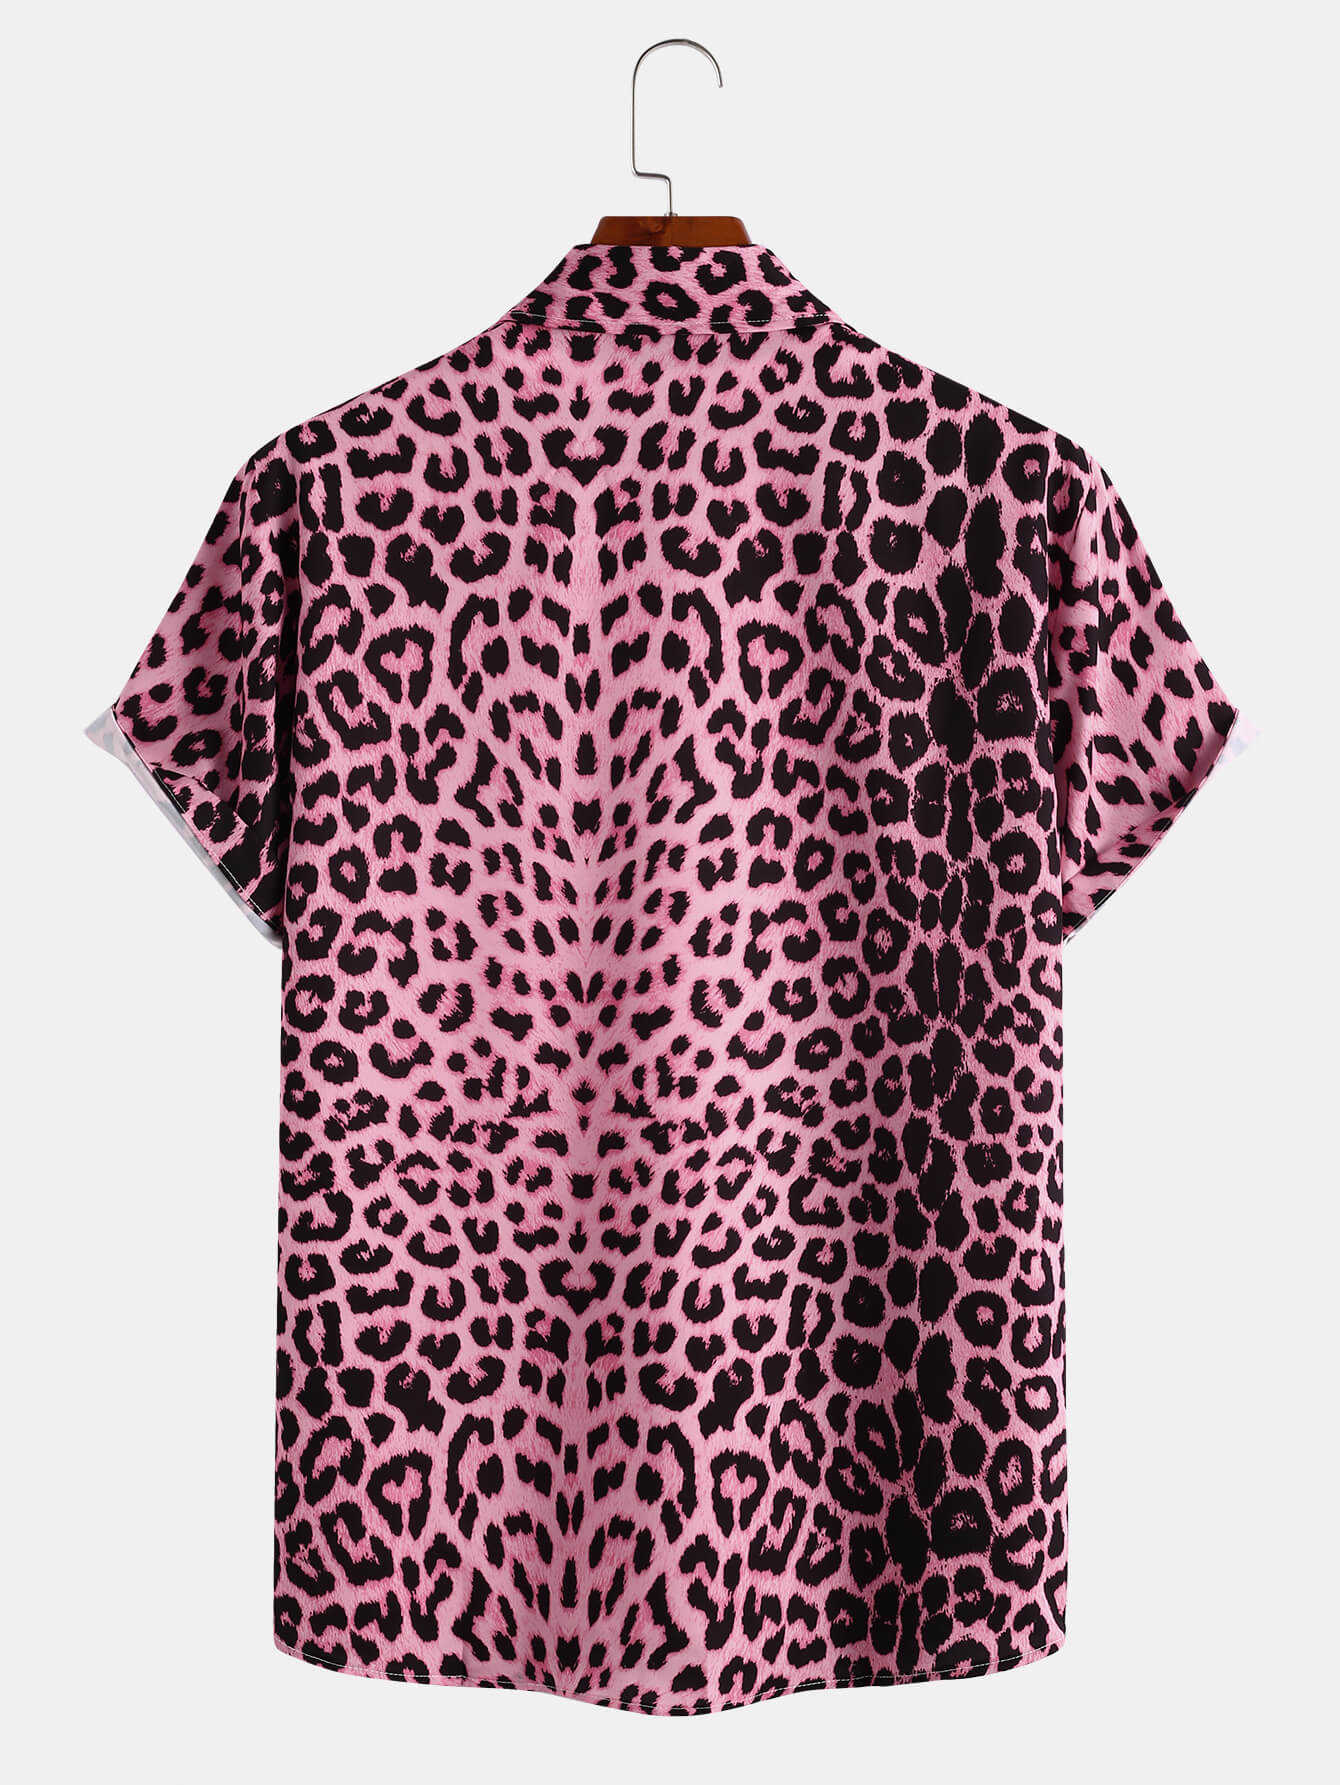 Men's Wild Leopard Print Short Sleeve Button Up Shirt With Black Spot ...